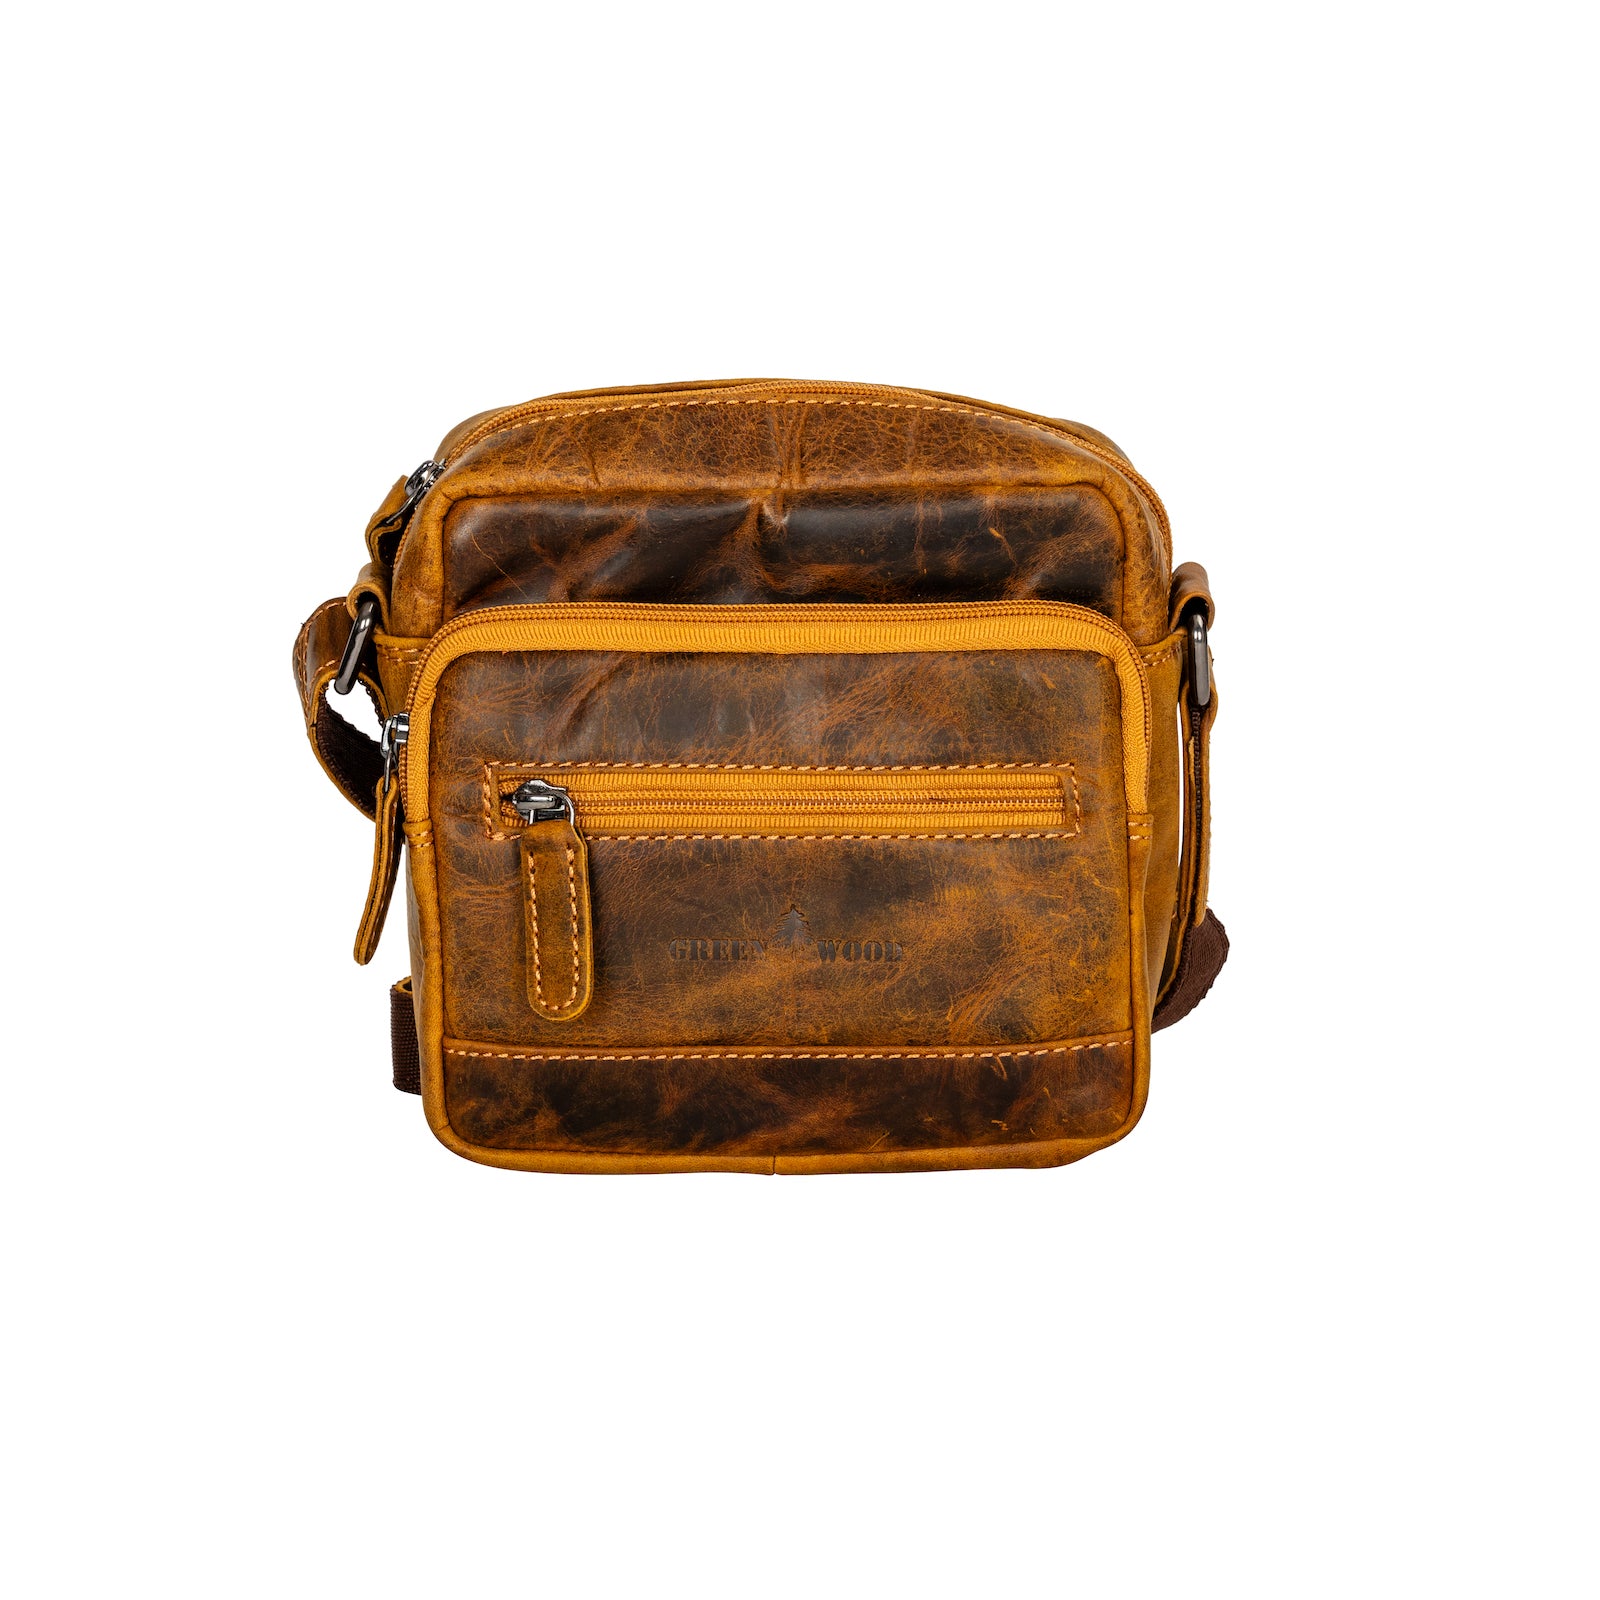 Leather Shoulder Bag Oliver- Camel - Leather Greenwood Bag | The Greenwood Leather Online Shop Australia